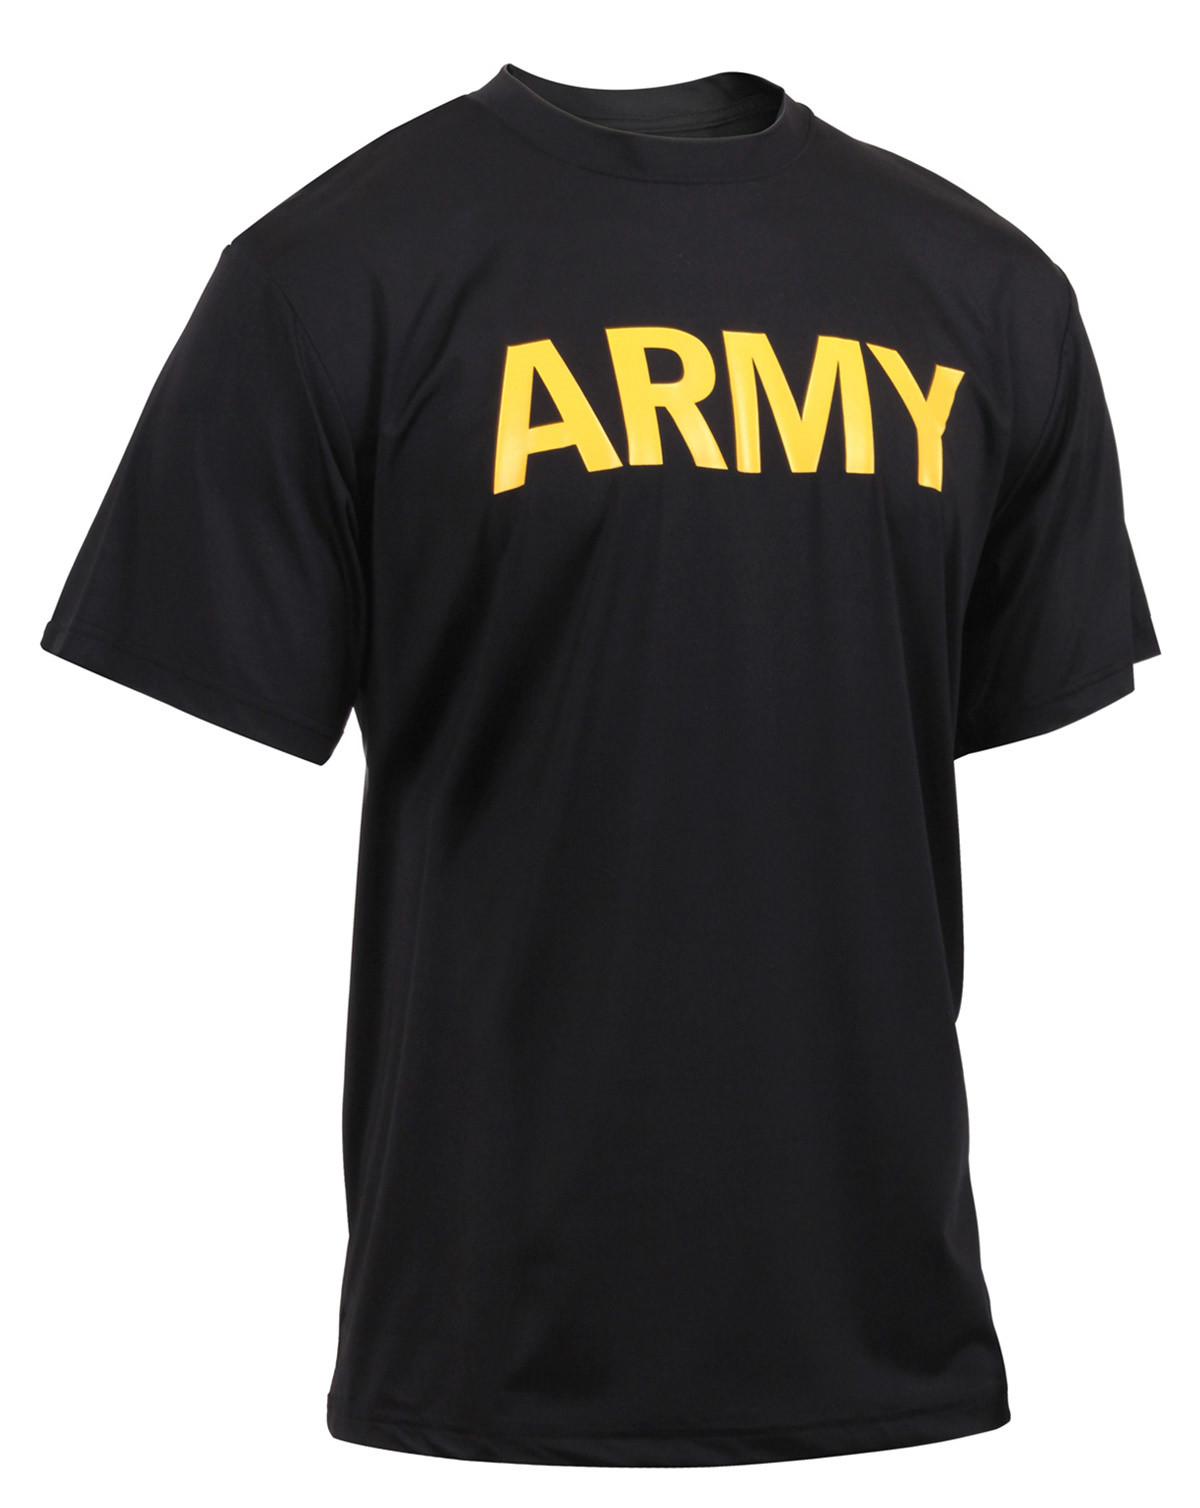 Rothco Army PT Trænings T-shirt (Sort, L)